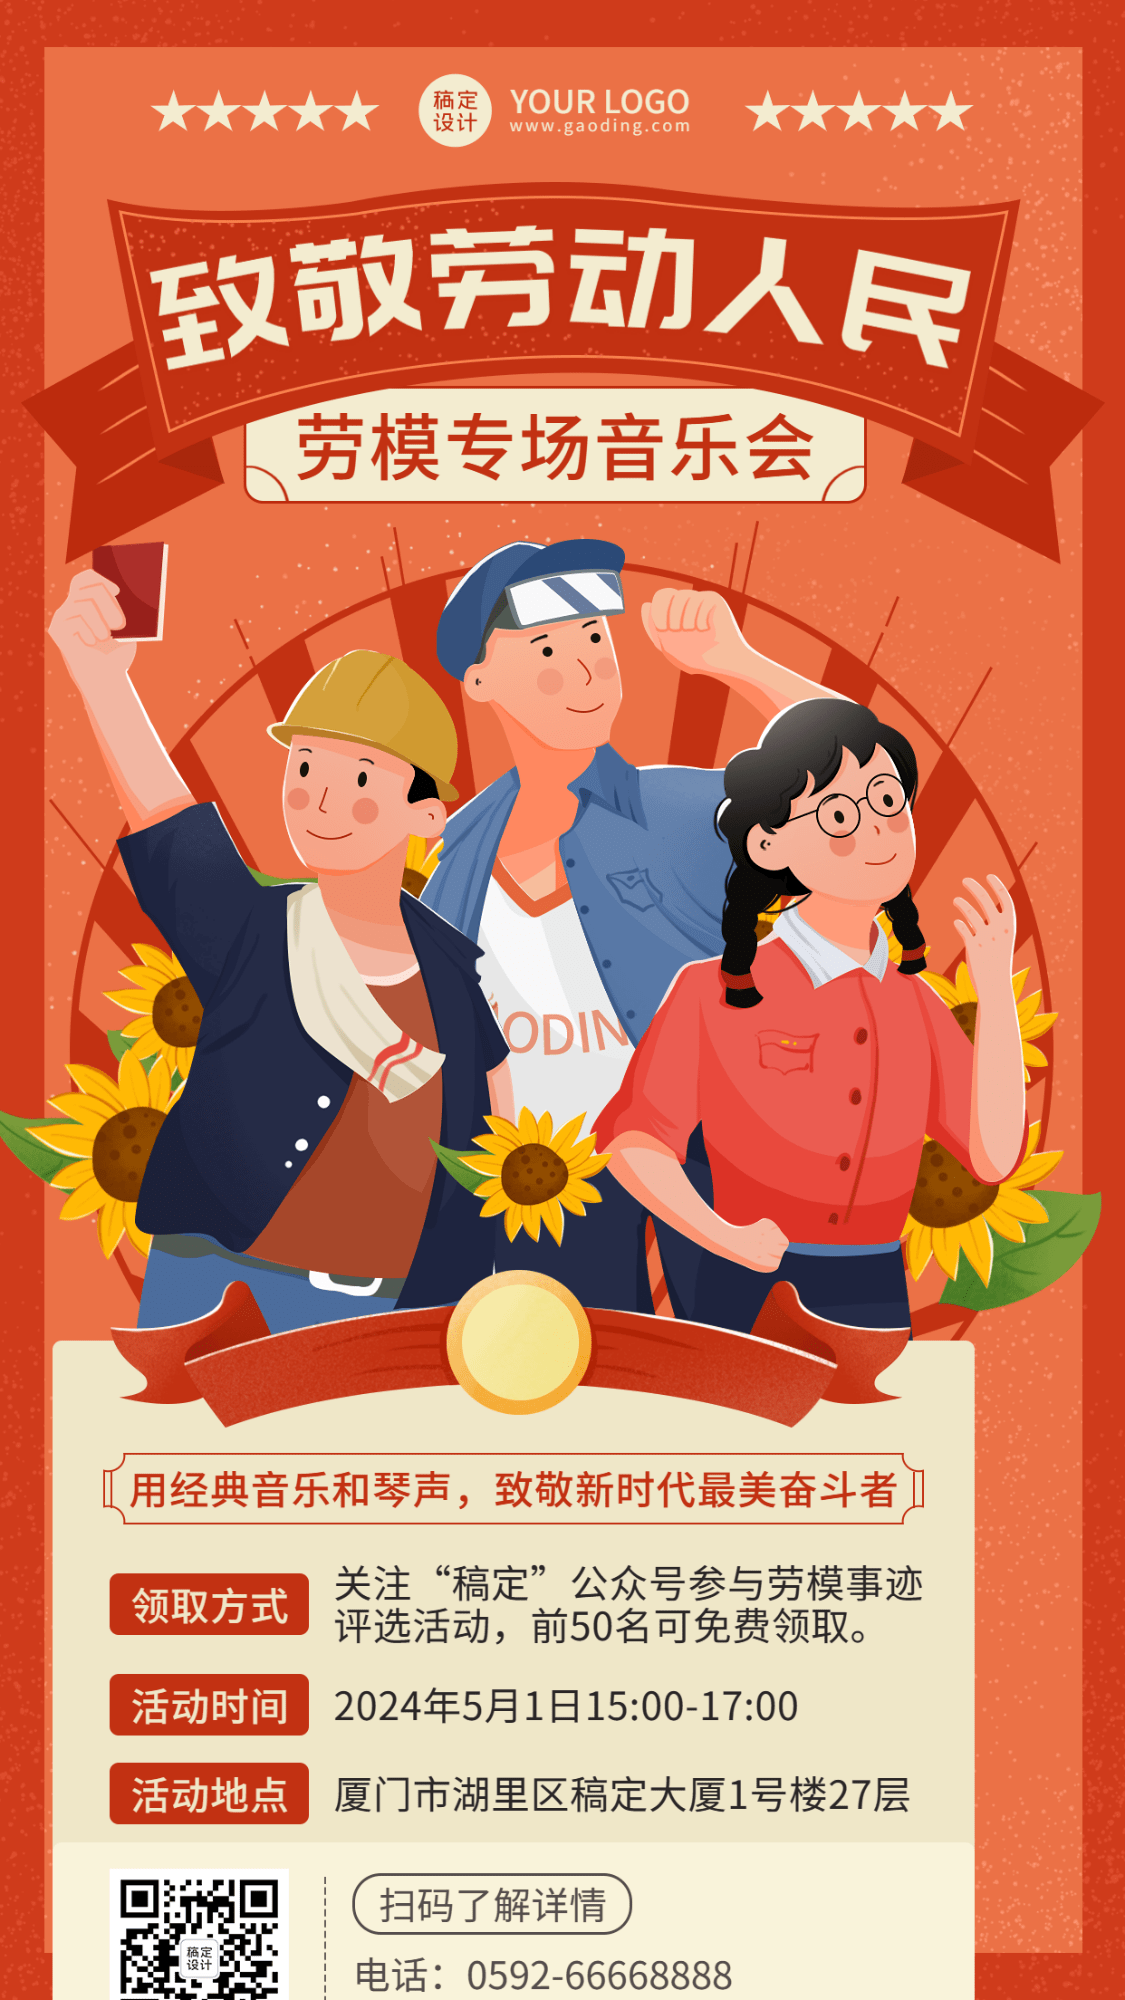 劳动节节日活动插画手机海报预览效果